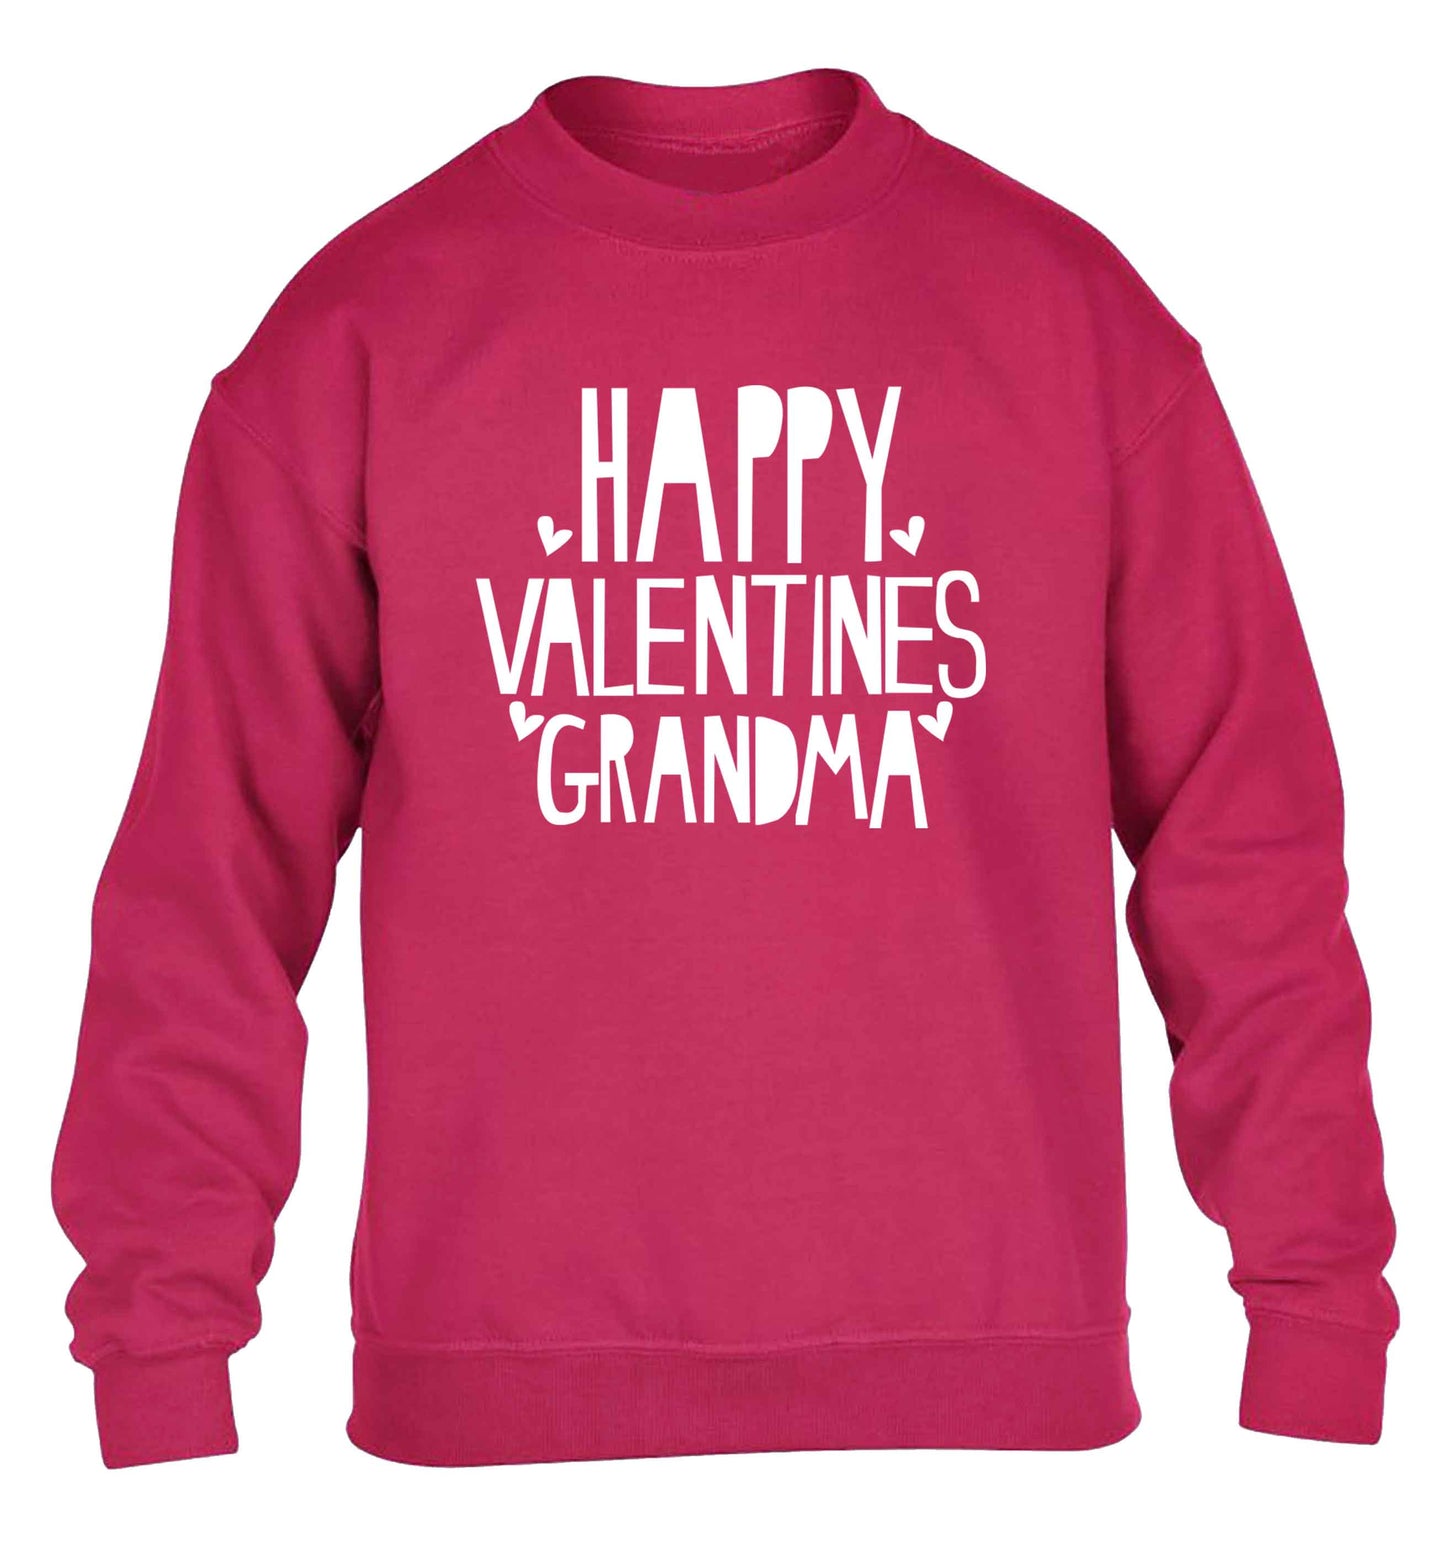 Happy valentines grandma children's pink sweater 12-13 Years